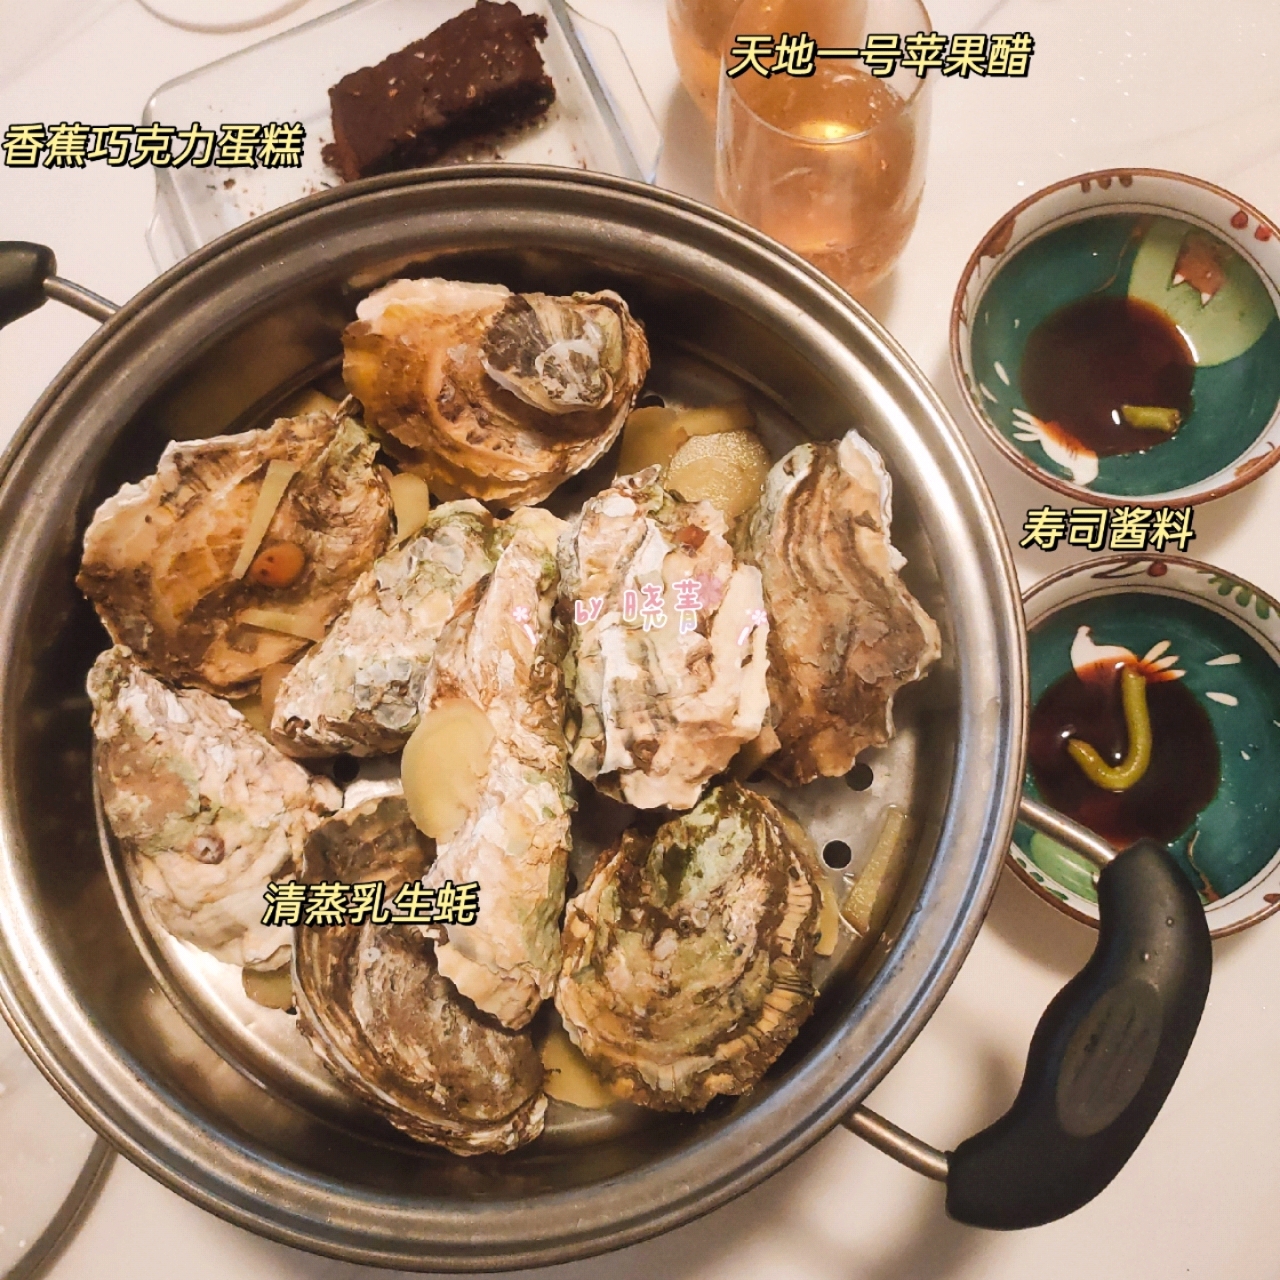 小海鲜丨辣炒蛤蜊&葱姜炒蛏子&蒜蓉烤生蚝